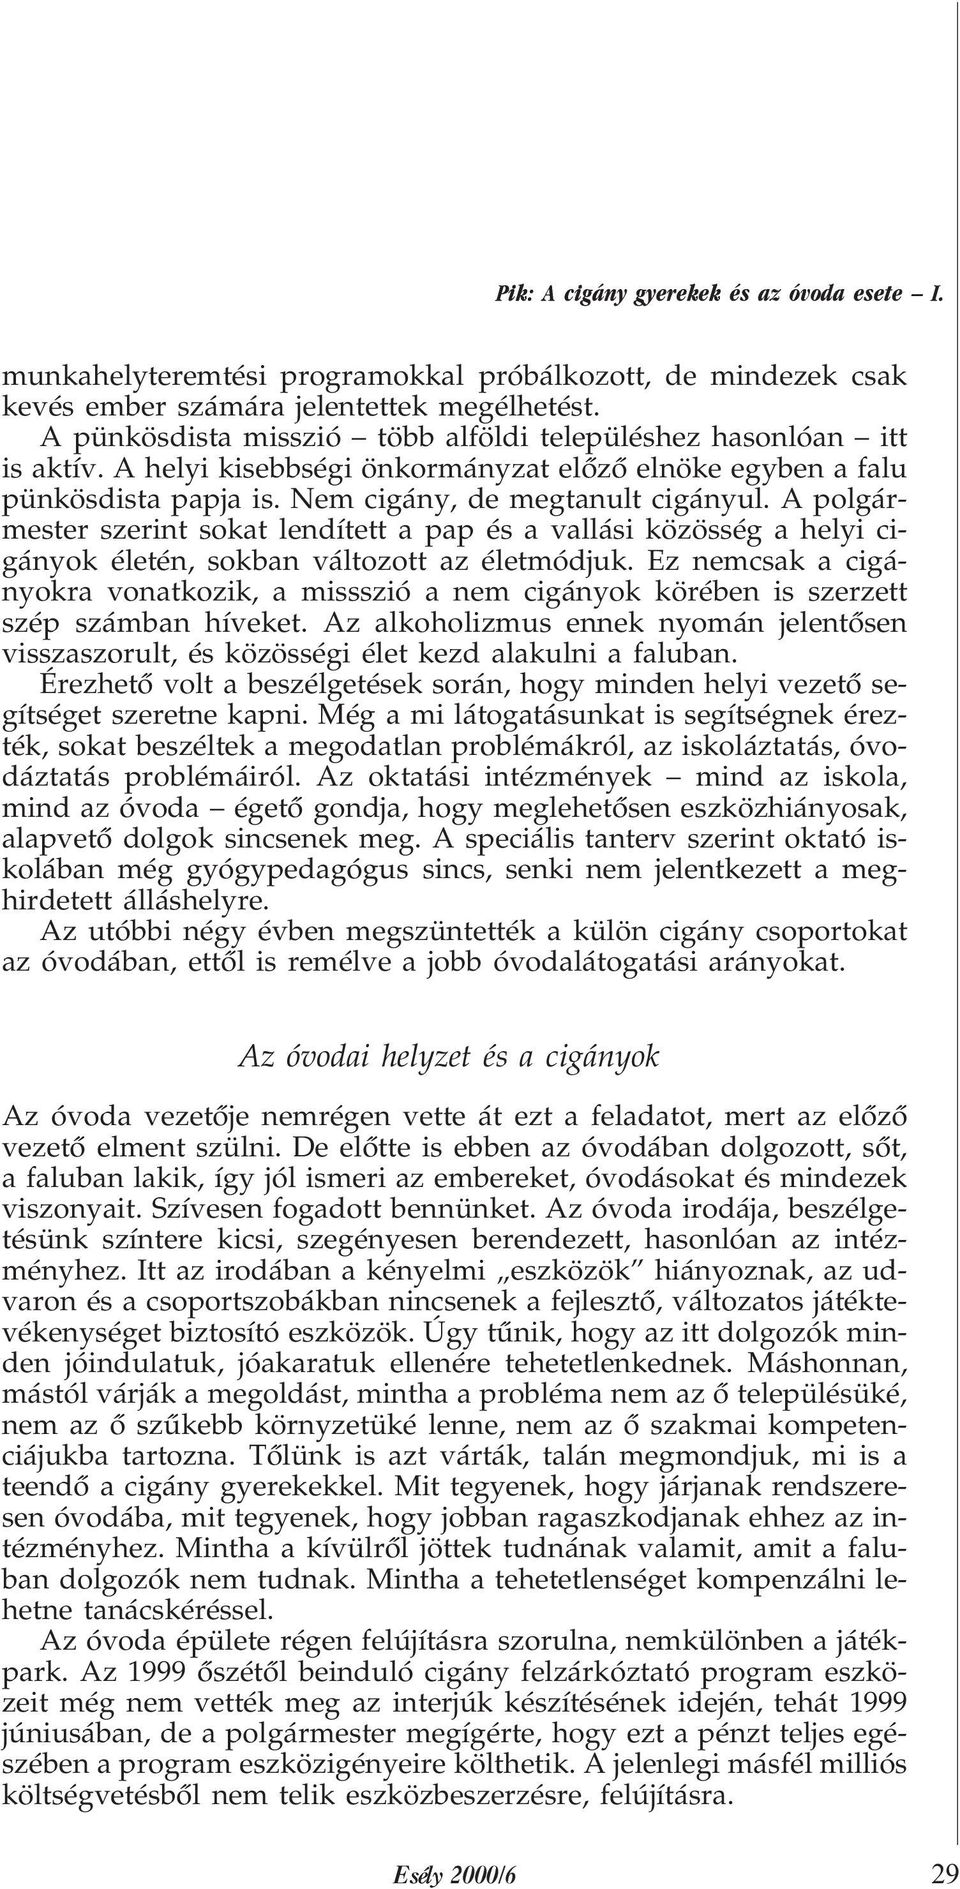 A cigány gyerekek és az óvoda esete I. - PDF Ingyenes letöltés